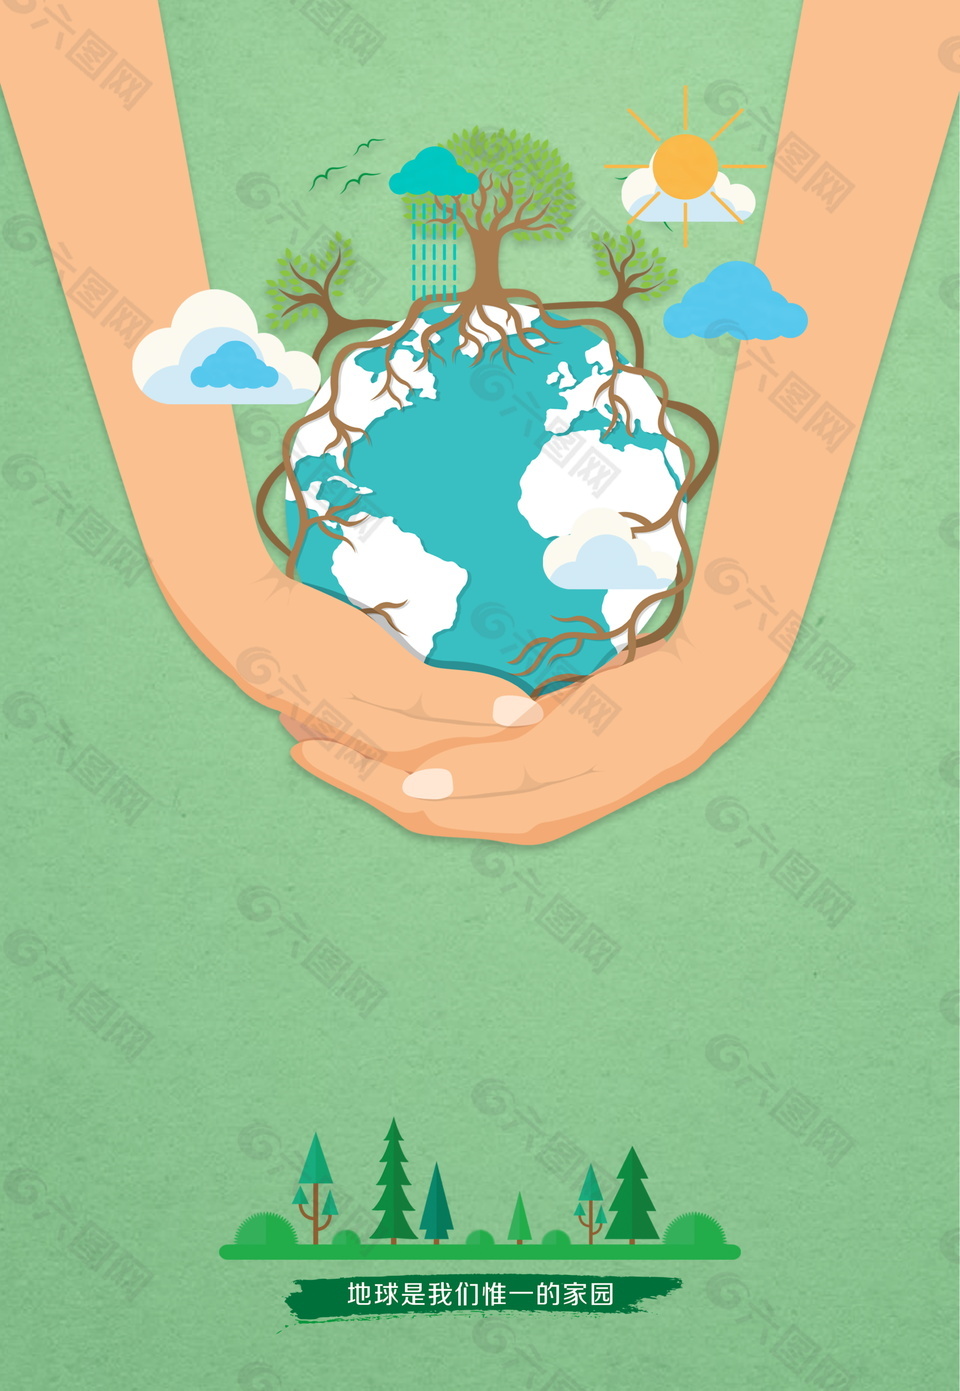 卡通手托地球环保主题海报背景设计